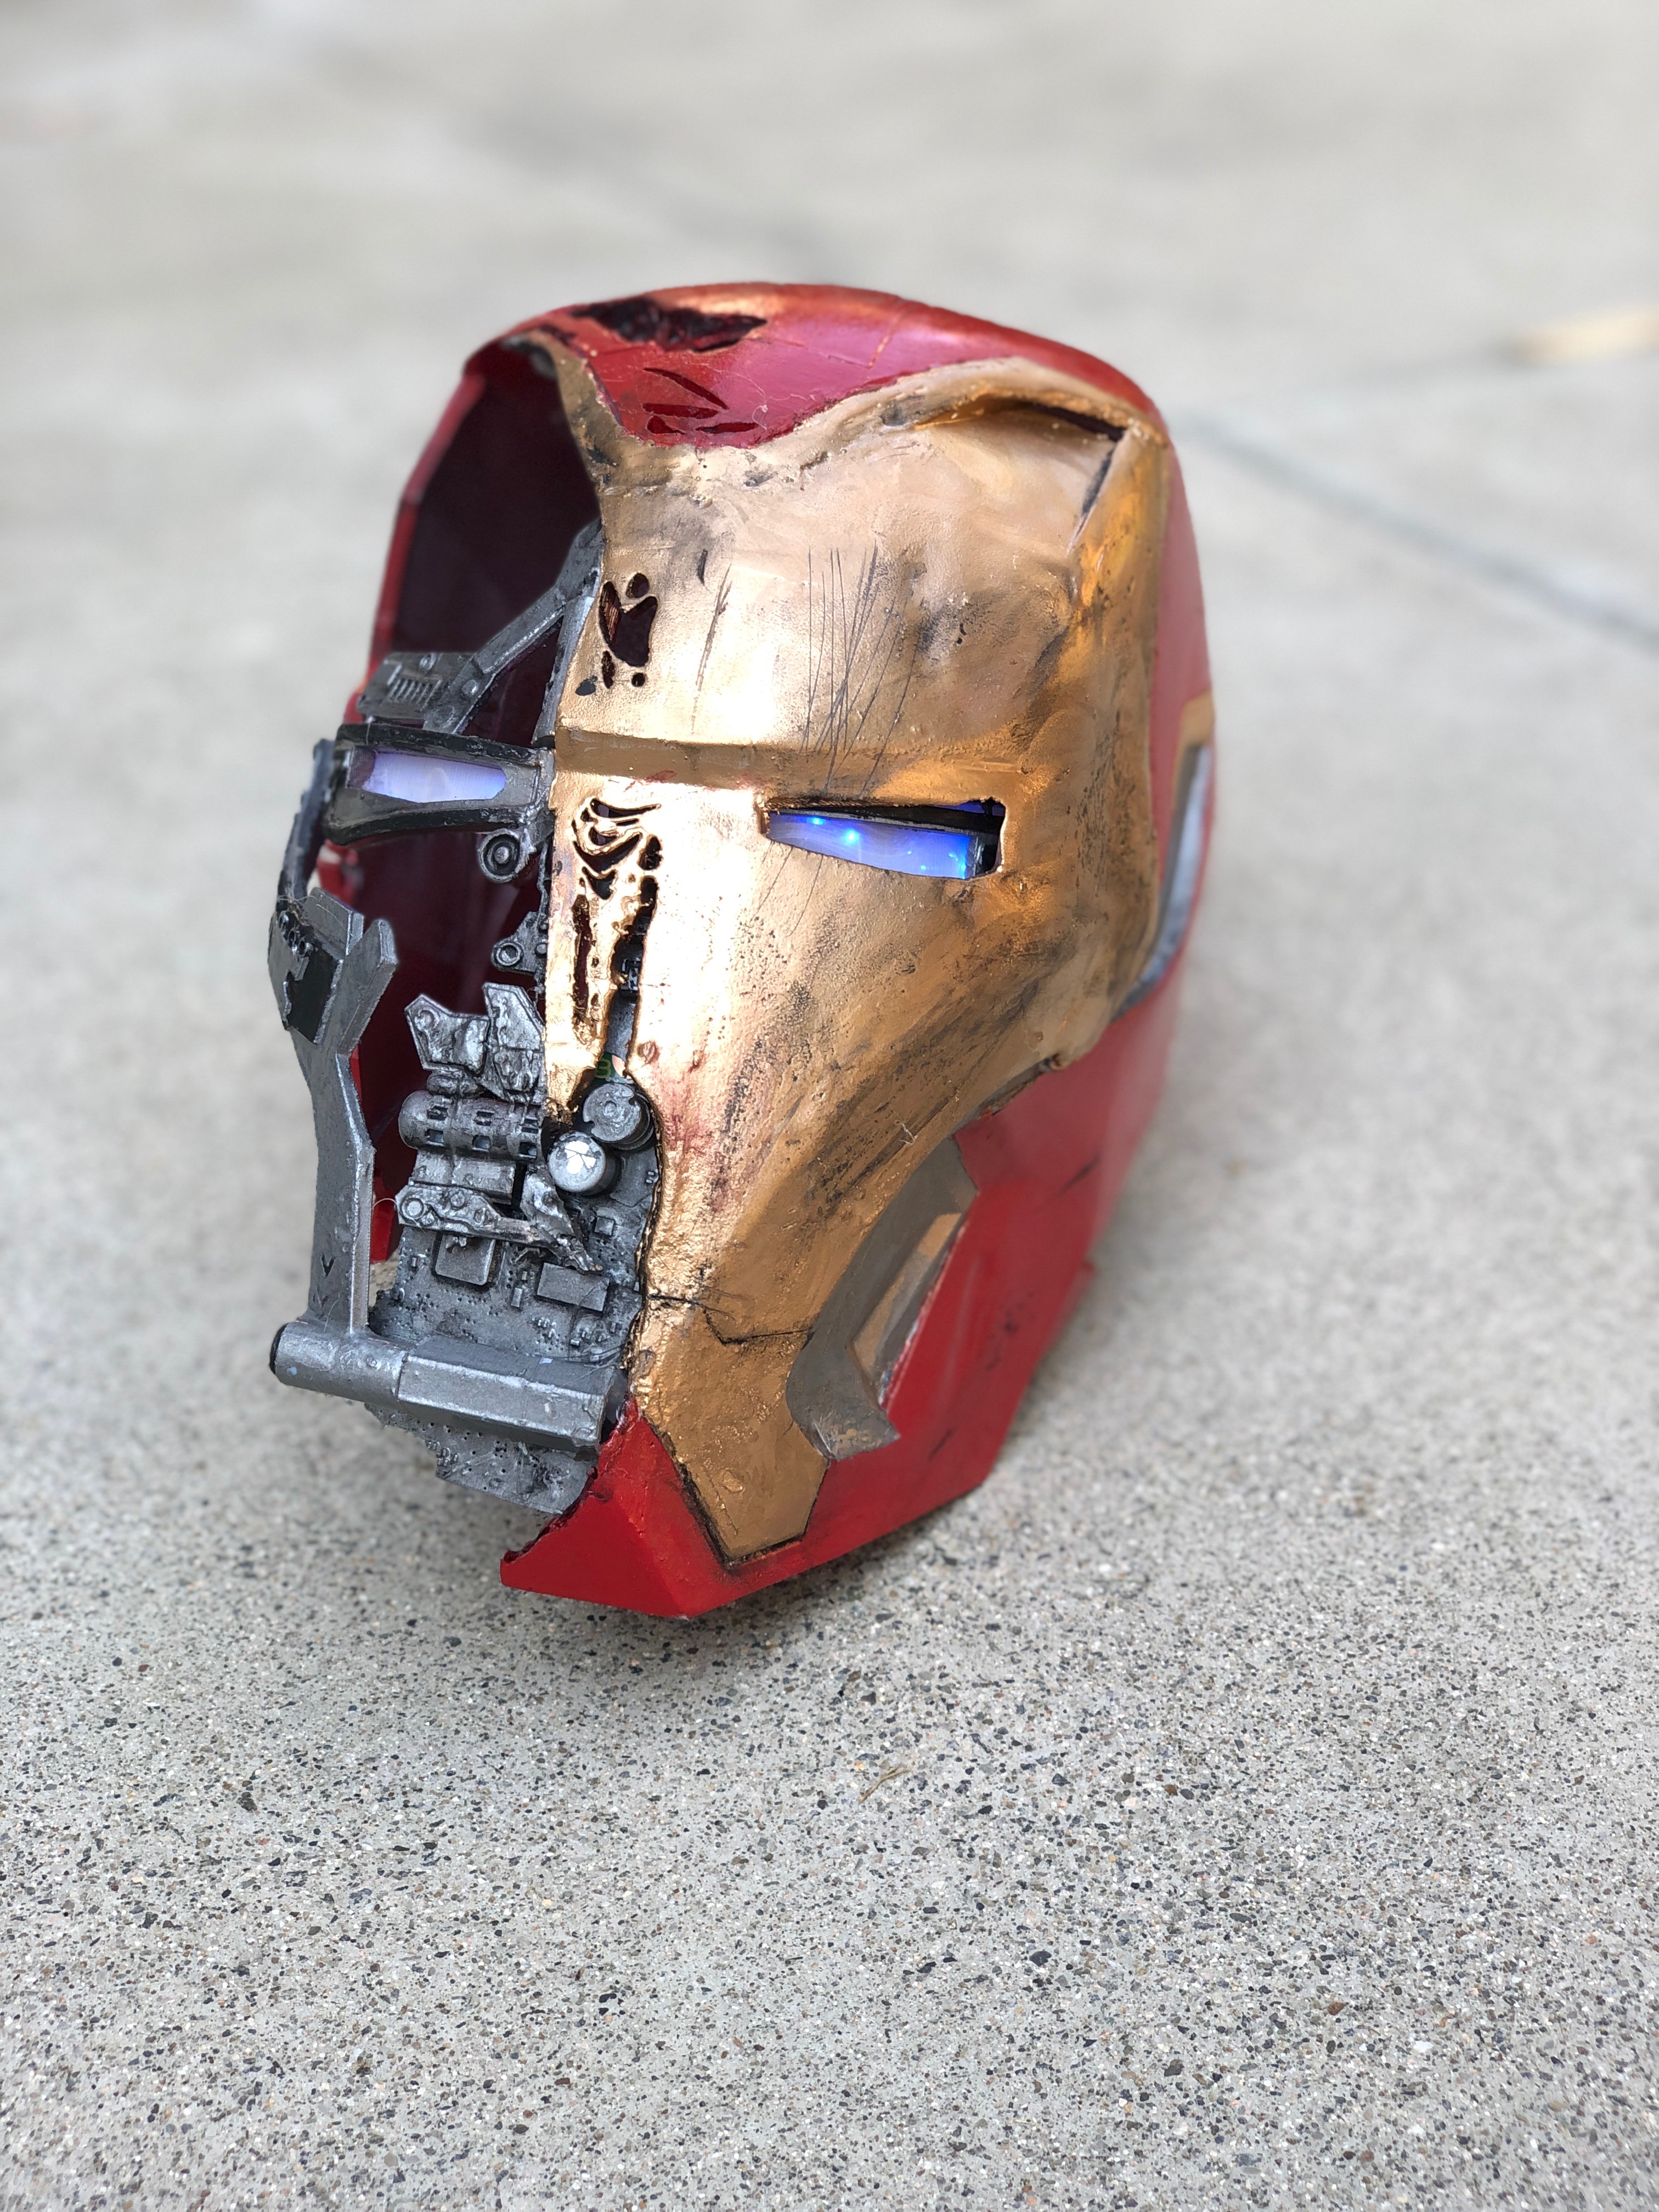 Iron Man Helmet From Avengers Endgame Wallpapers